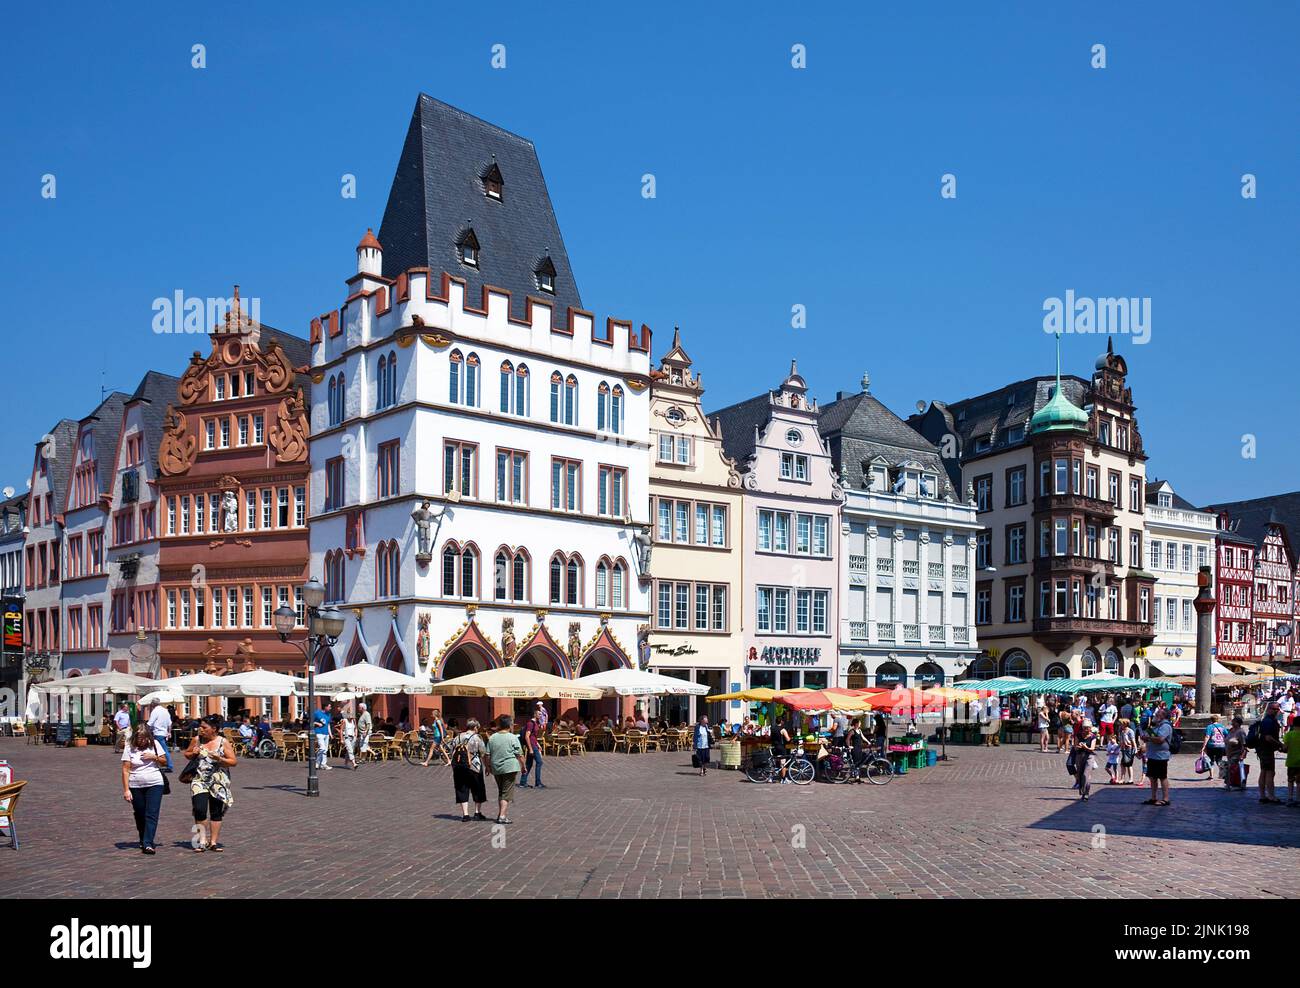 Marché principal avec maisons historiques et café de rue, Ratskeller, Trèves, Rhénanie-Palatinat, Allemagne, Europe Banque D'Images